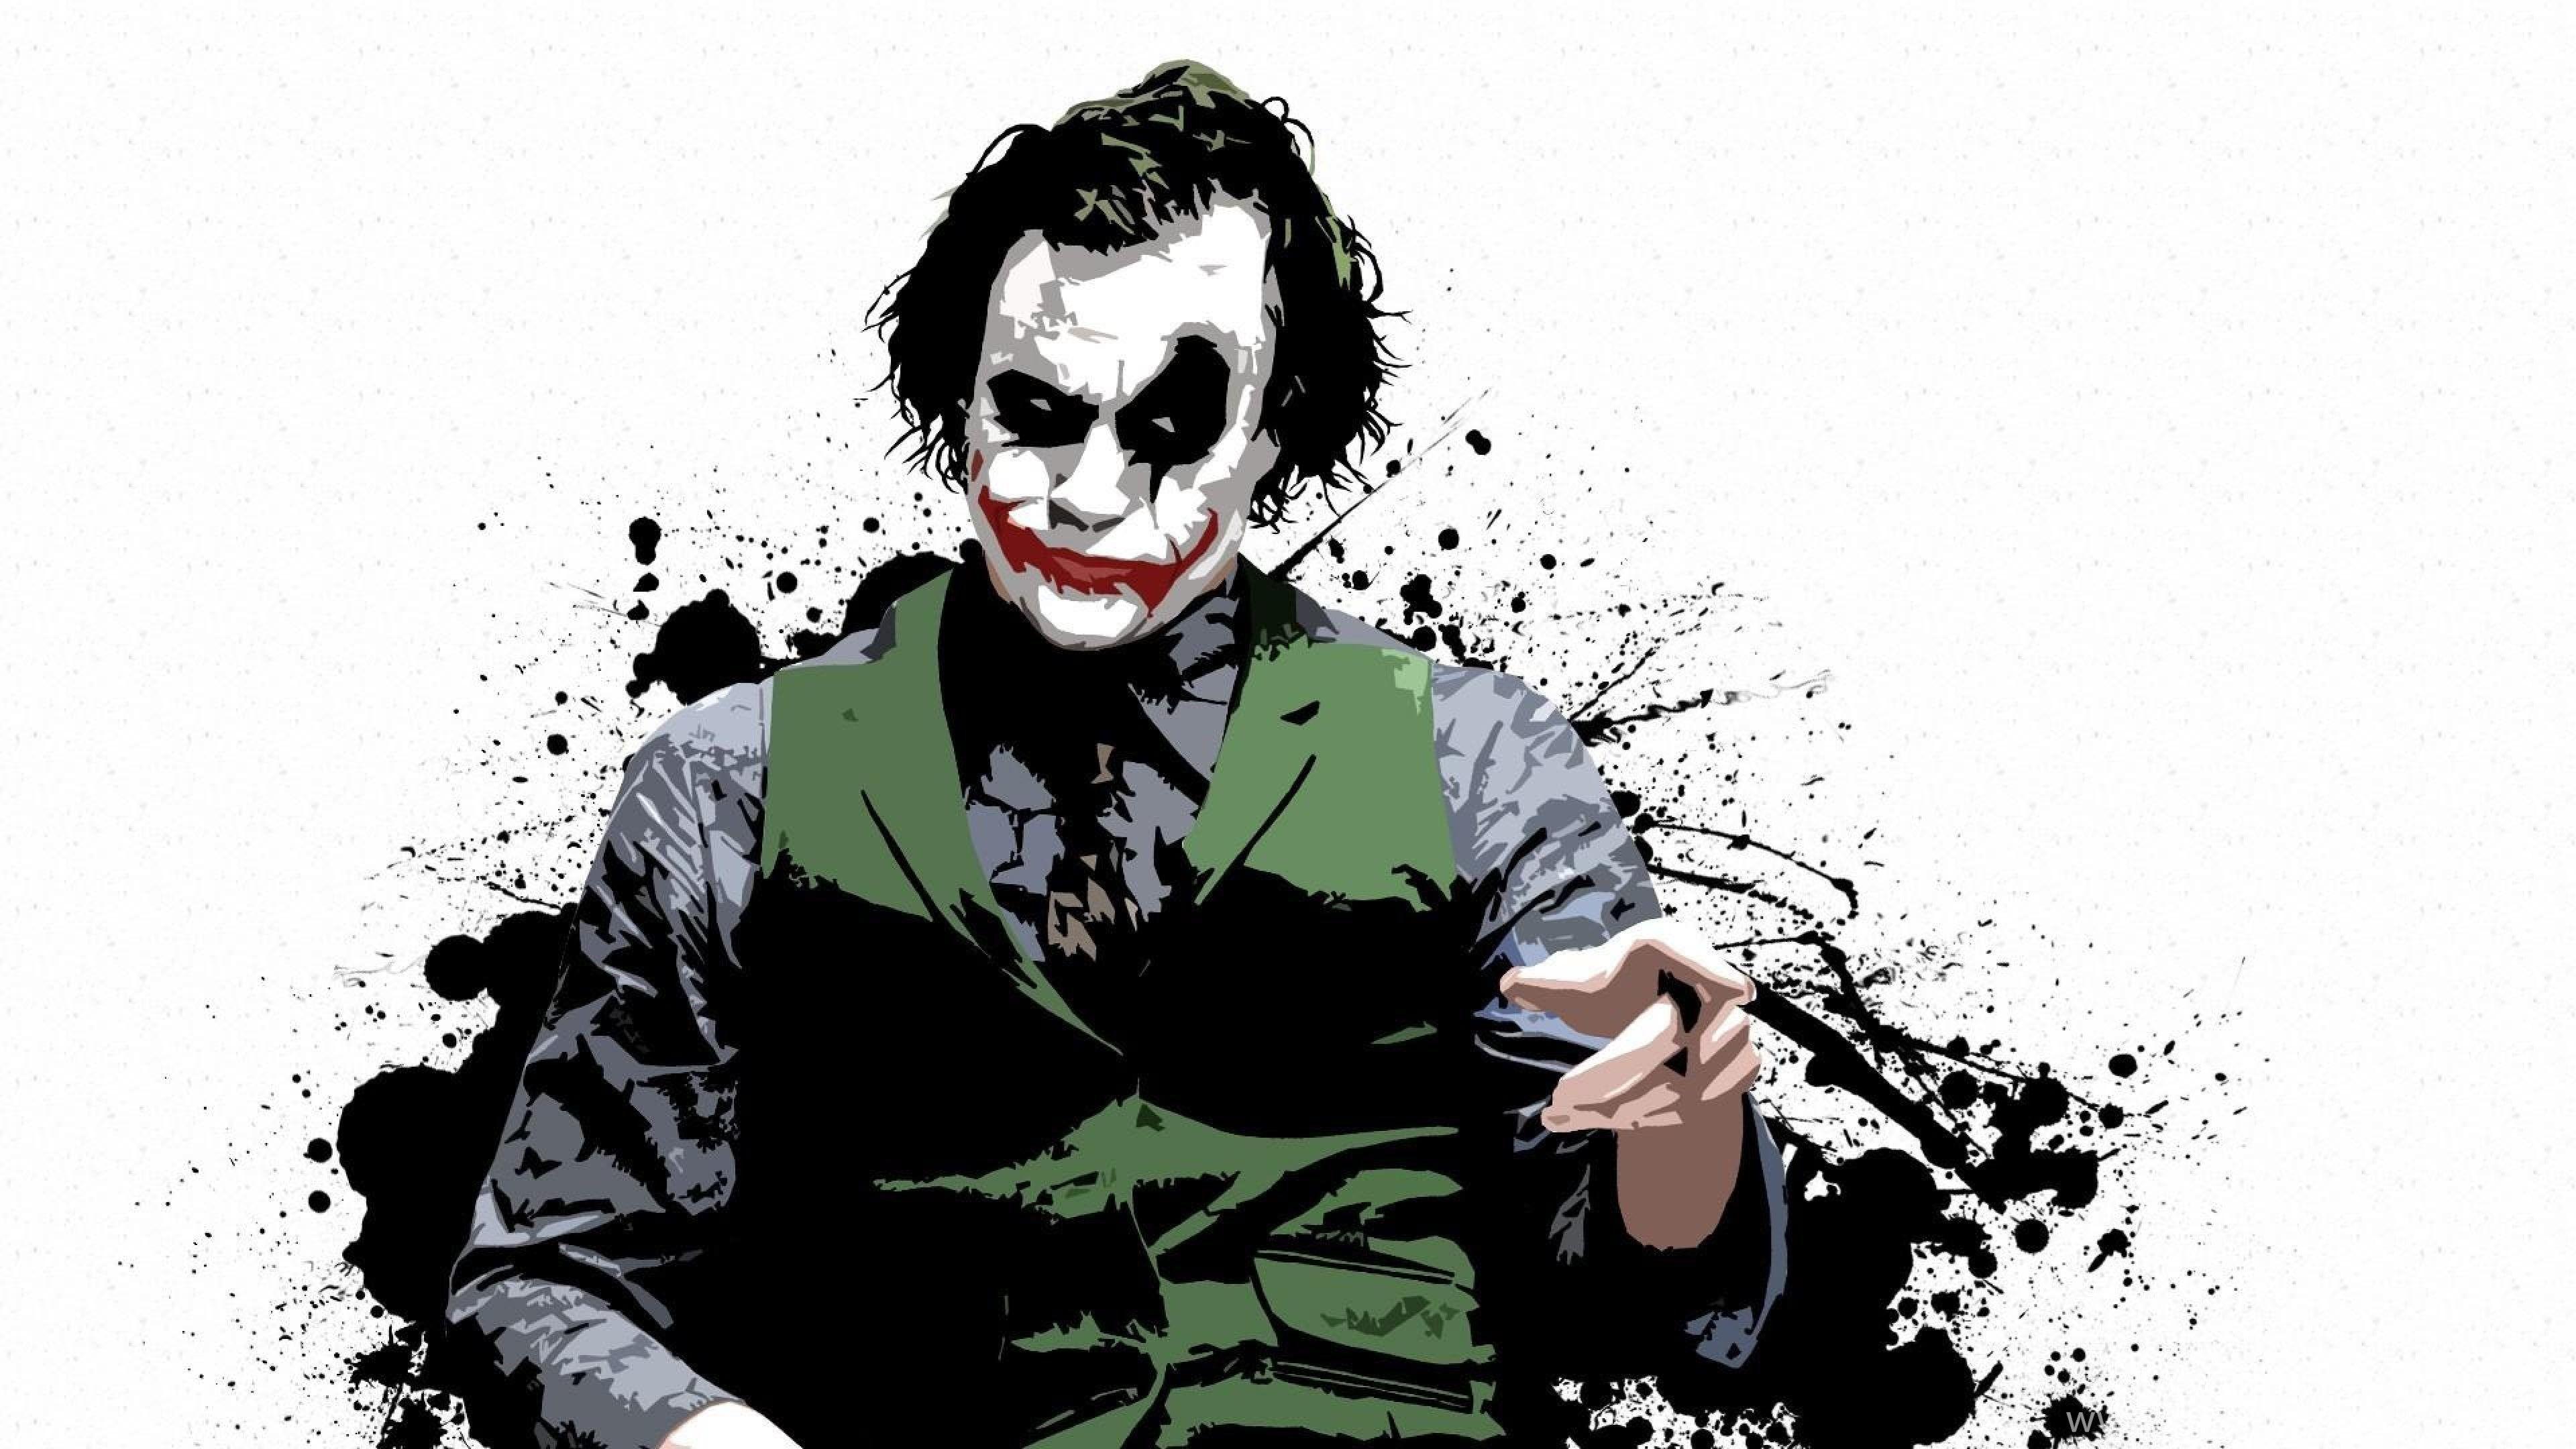 Dark Knight Joker in 4K Ultra HD Wallpapers - Top Free Dark Knight Joker in 4K Ultra HD